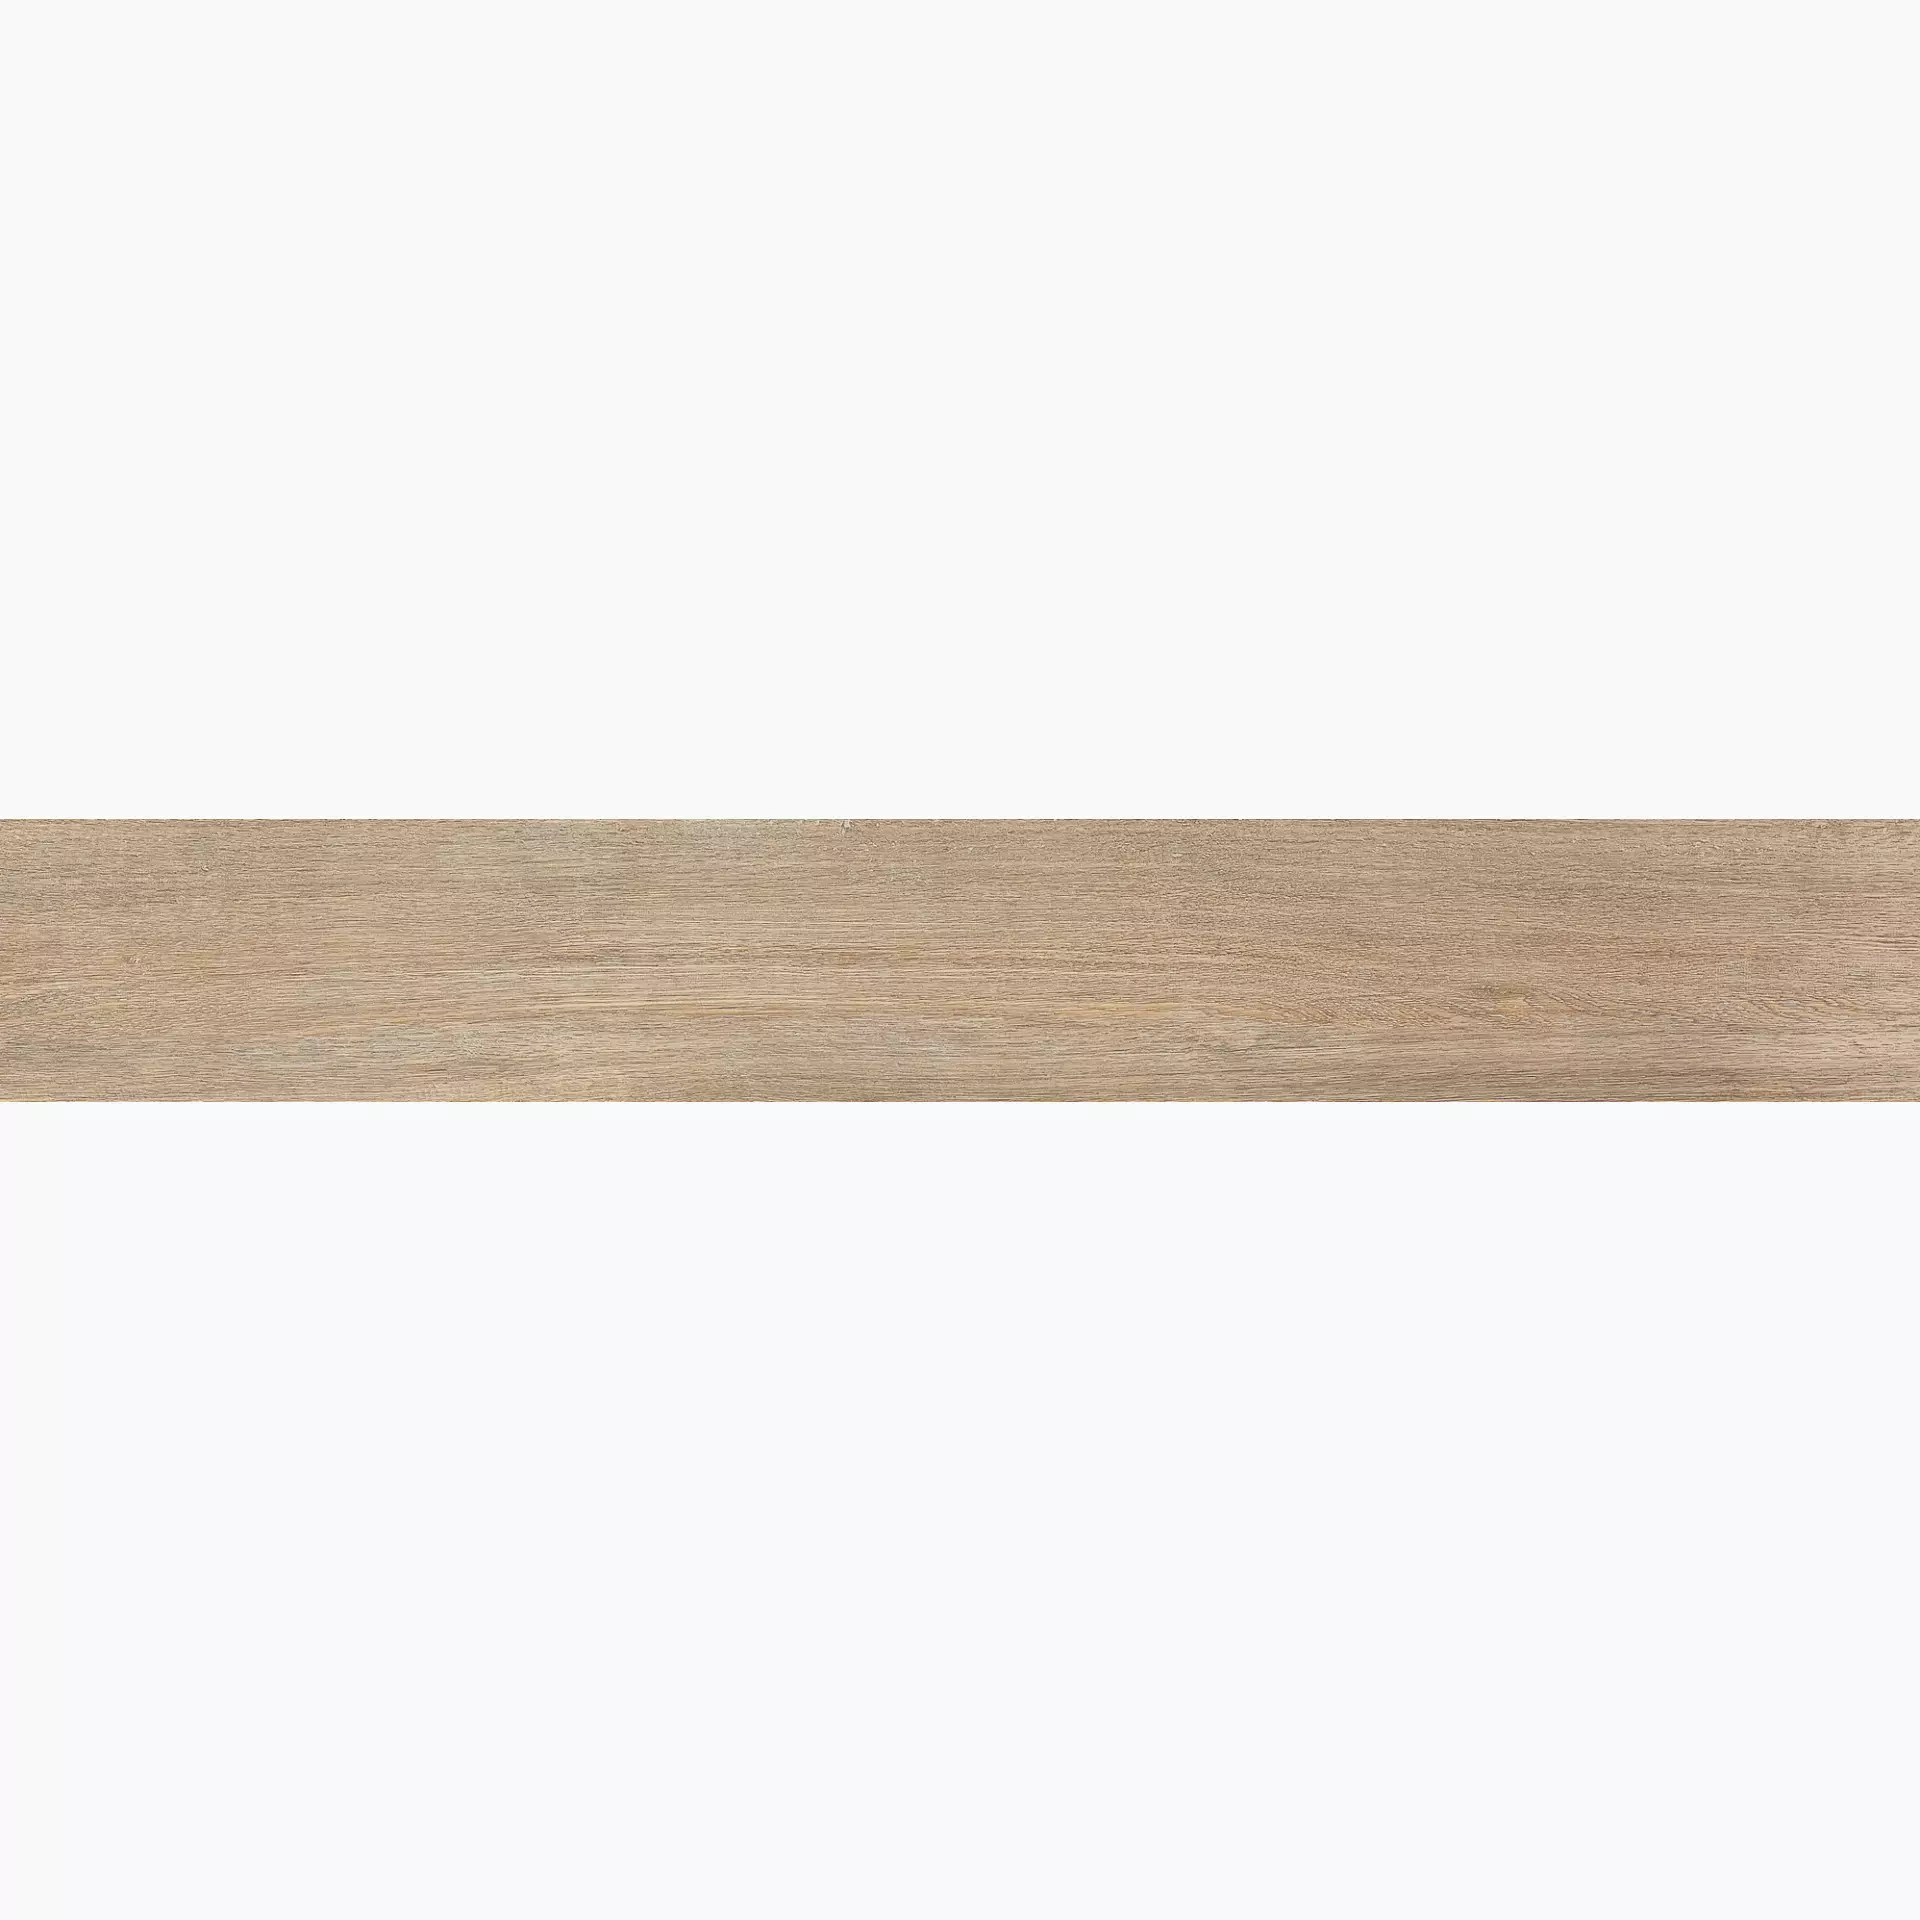 Florim Selection Oak Cream Oak Naturale – Matt 737648 26,5x180cm rectified 9mm